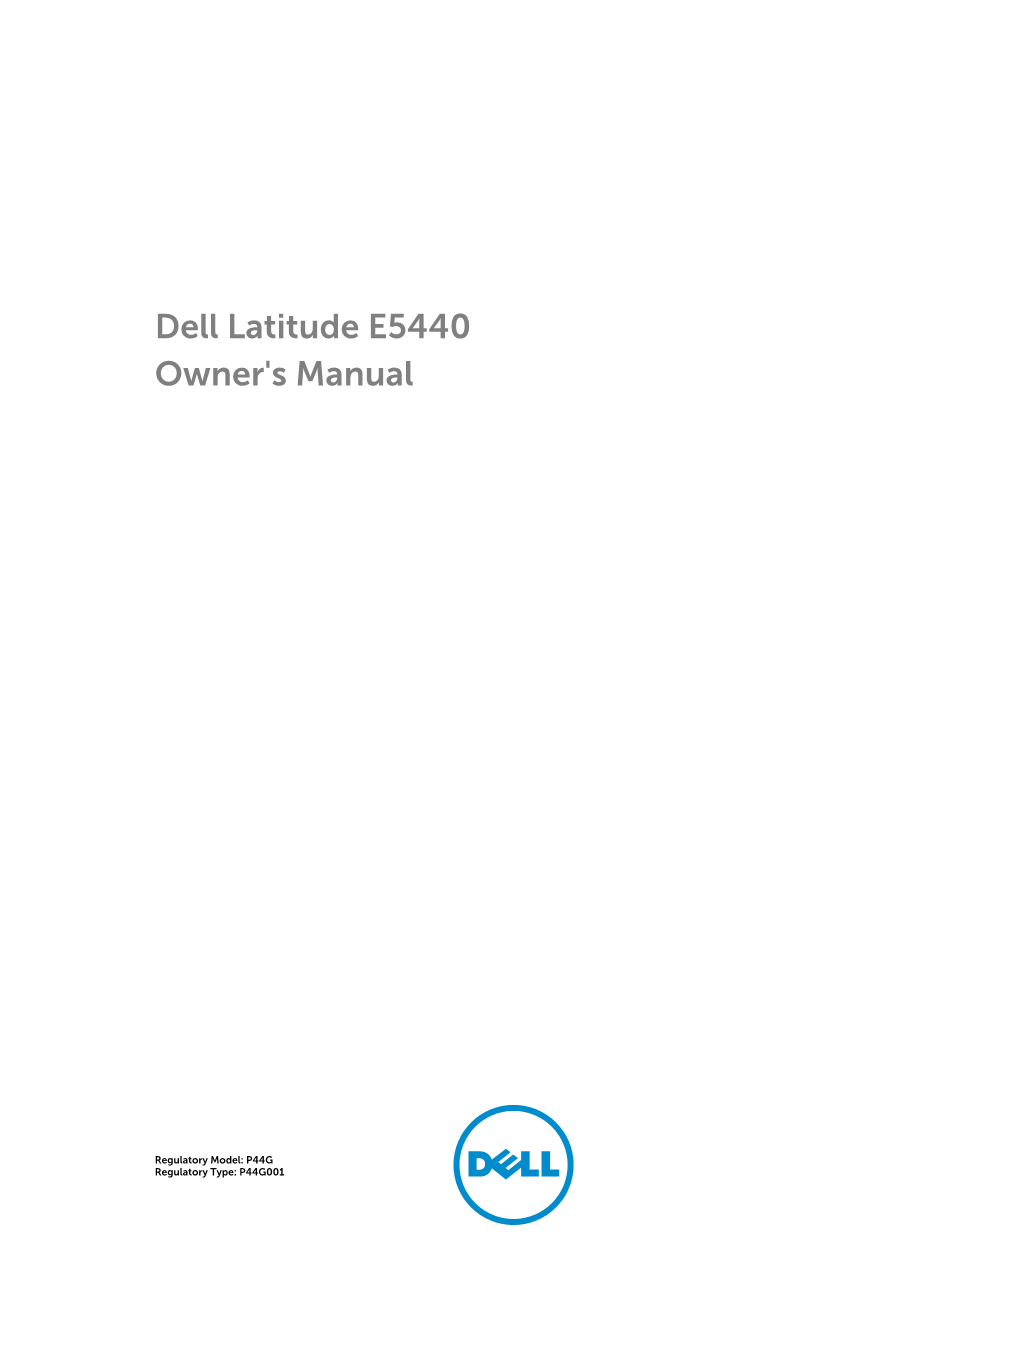 Dell Latitude E5440 Owner's Manual